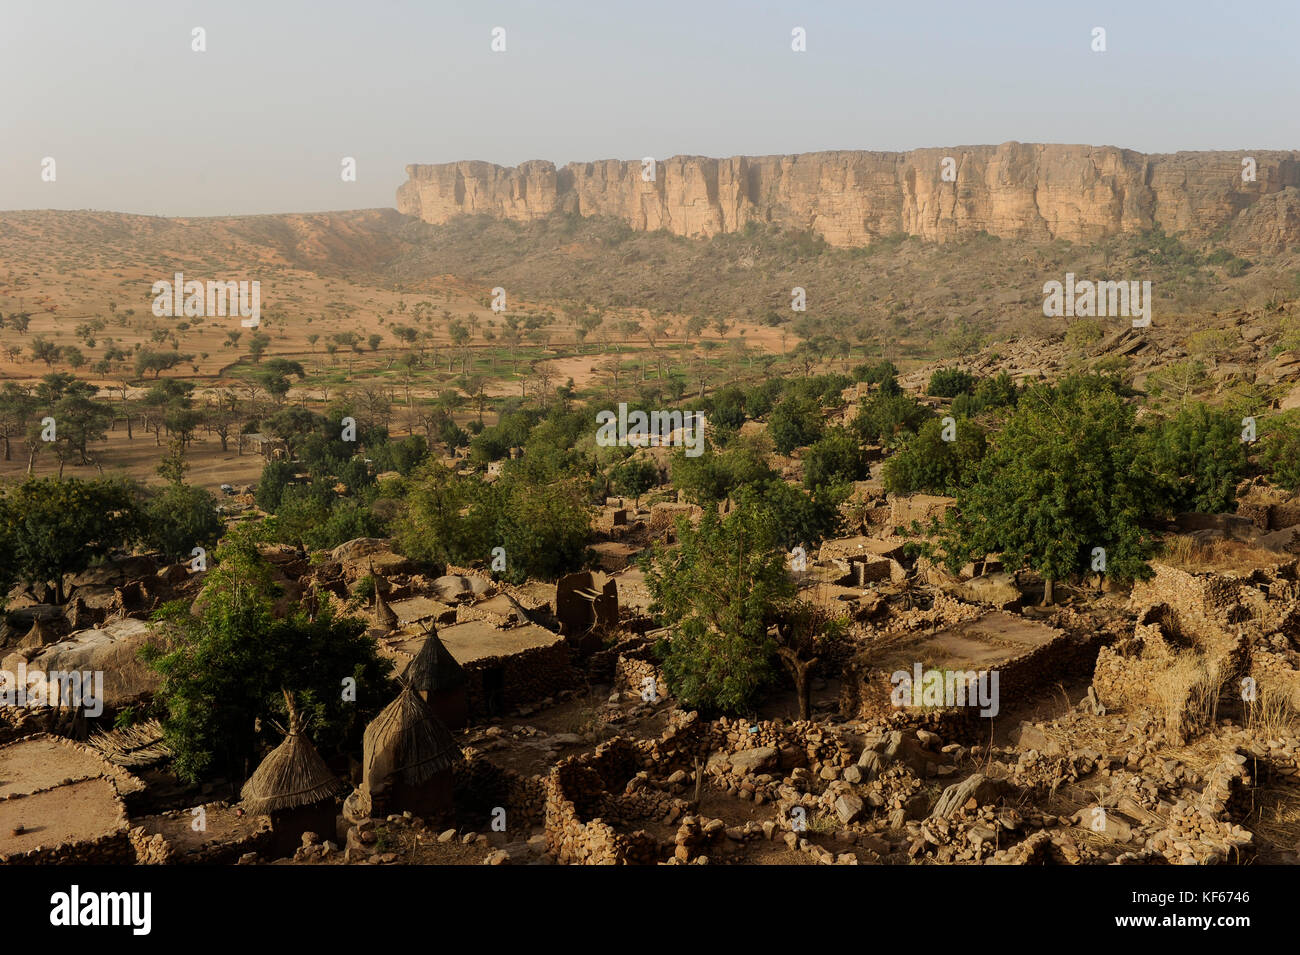 Land der Dogon in Mali, Dogon Village mit Ton Architektur an der Falaise ein UNESCO-Weltkulturerbe/MALI, etwa 20 km von Bandiagara südoestlich verlaeuft die rund 200 km lange Falaise, UNESCO-Welterbe, eine teilweise stark erodierte Sandsteinwand bis zu 300m Höhe, hier befinden sich viele Dogon Doerfer im Lehmbau Illustr. Stockfoto